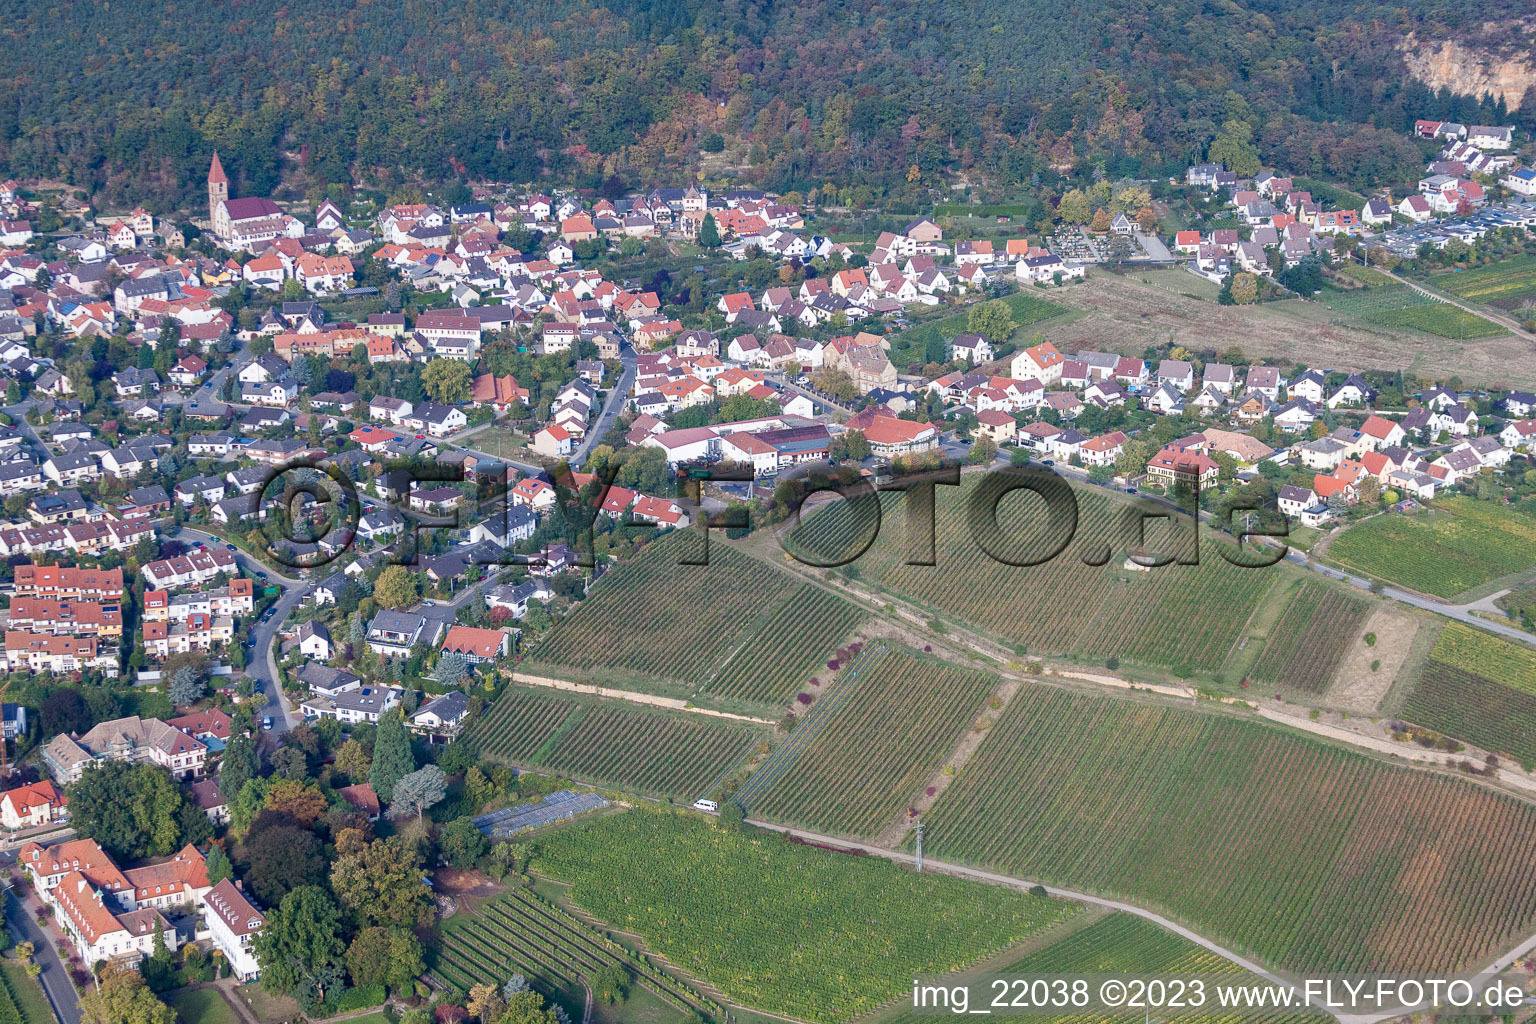 Ortsteil Königsbach in Neustadt an der Weinstraße im Bundesland Rheinland-Pfalz, Deutschland von der Drohne aus gesehen